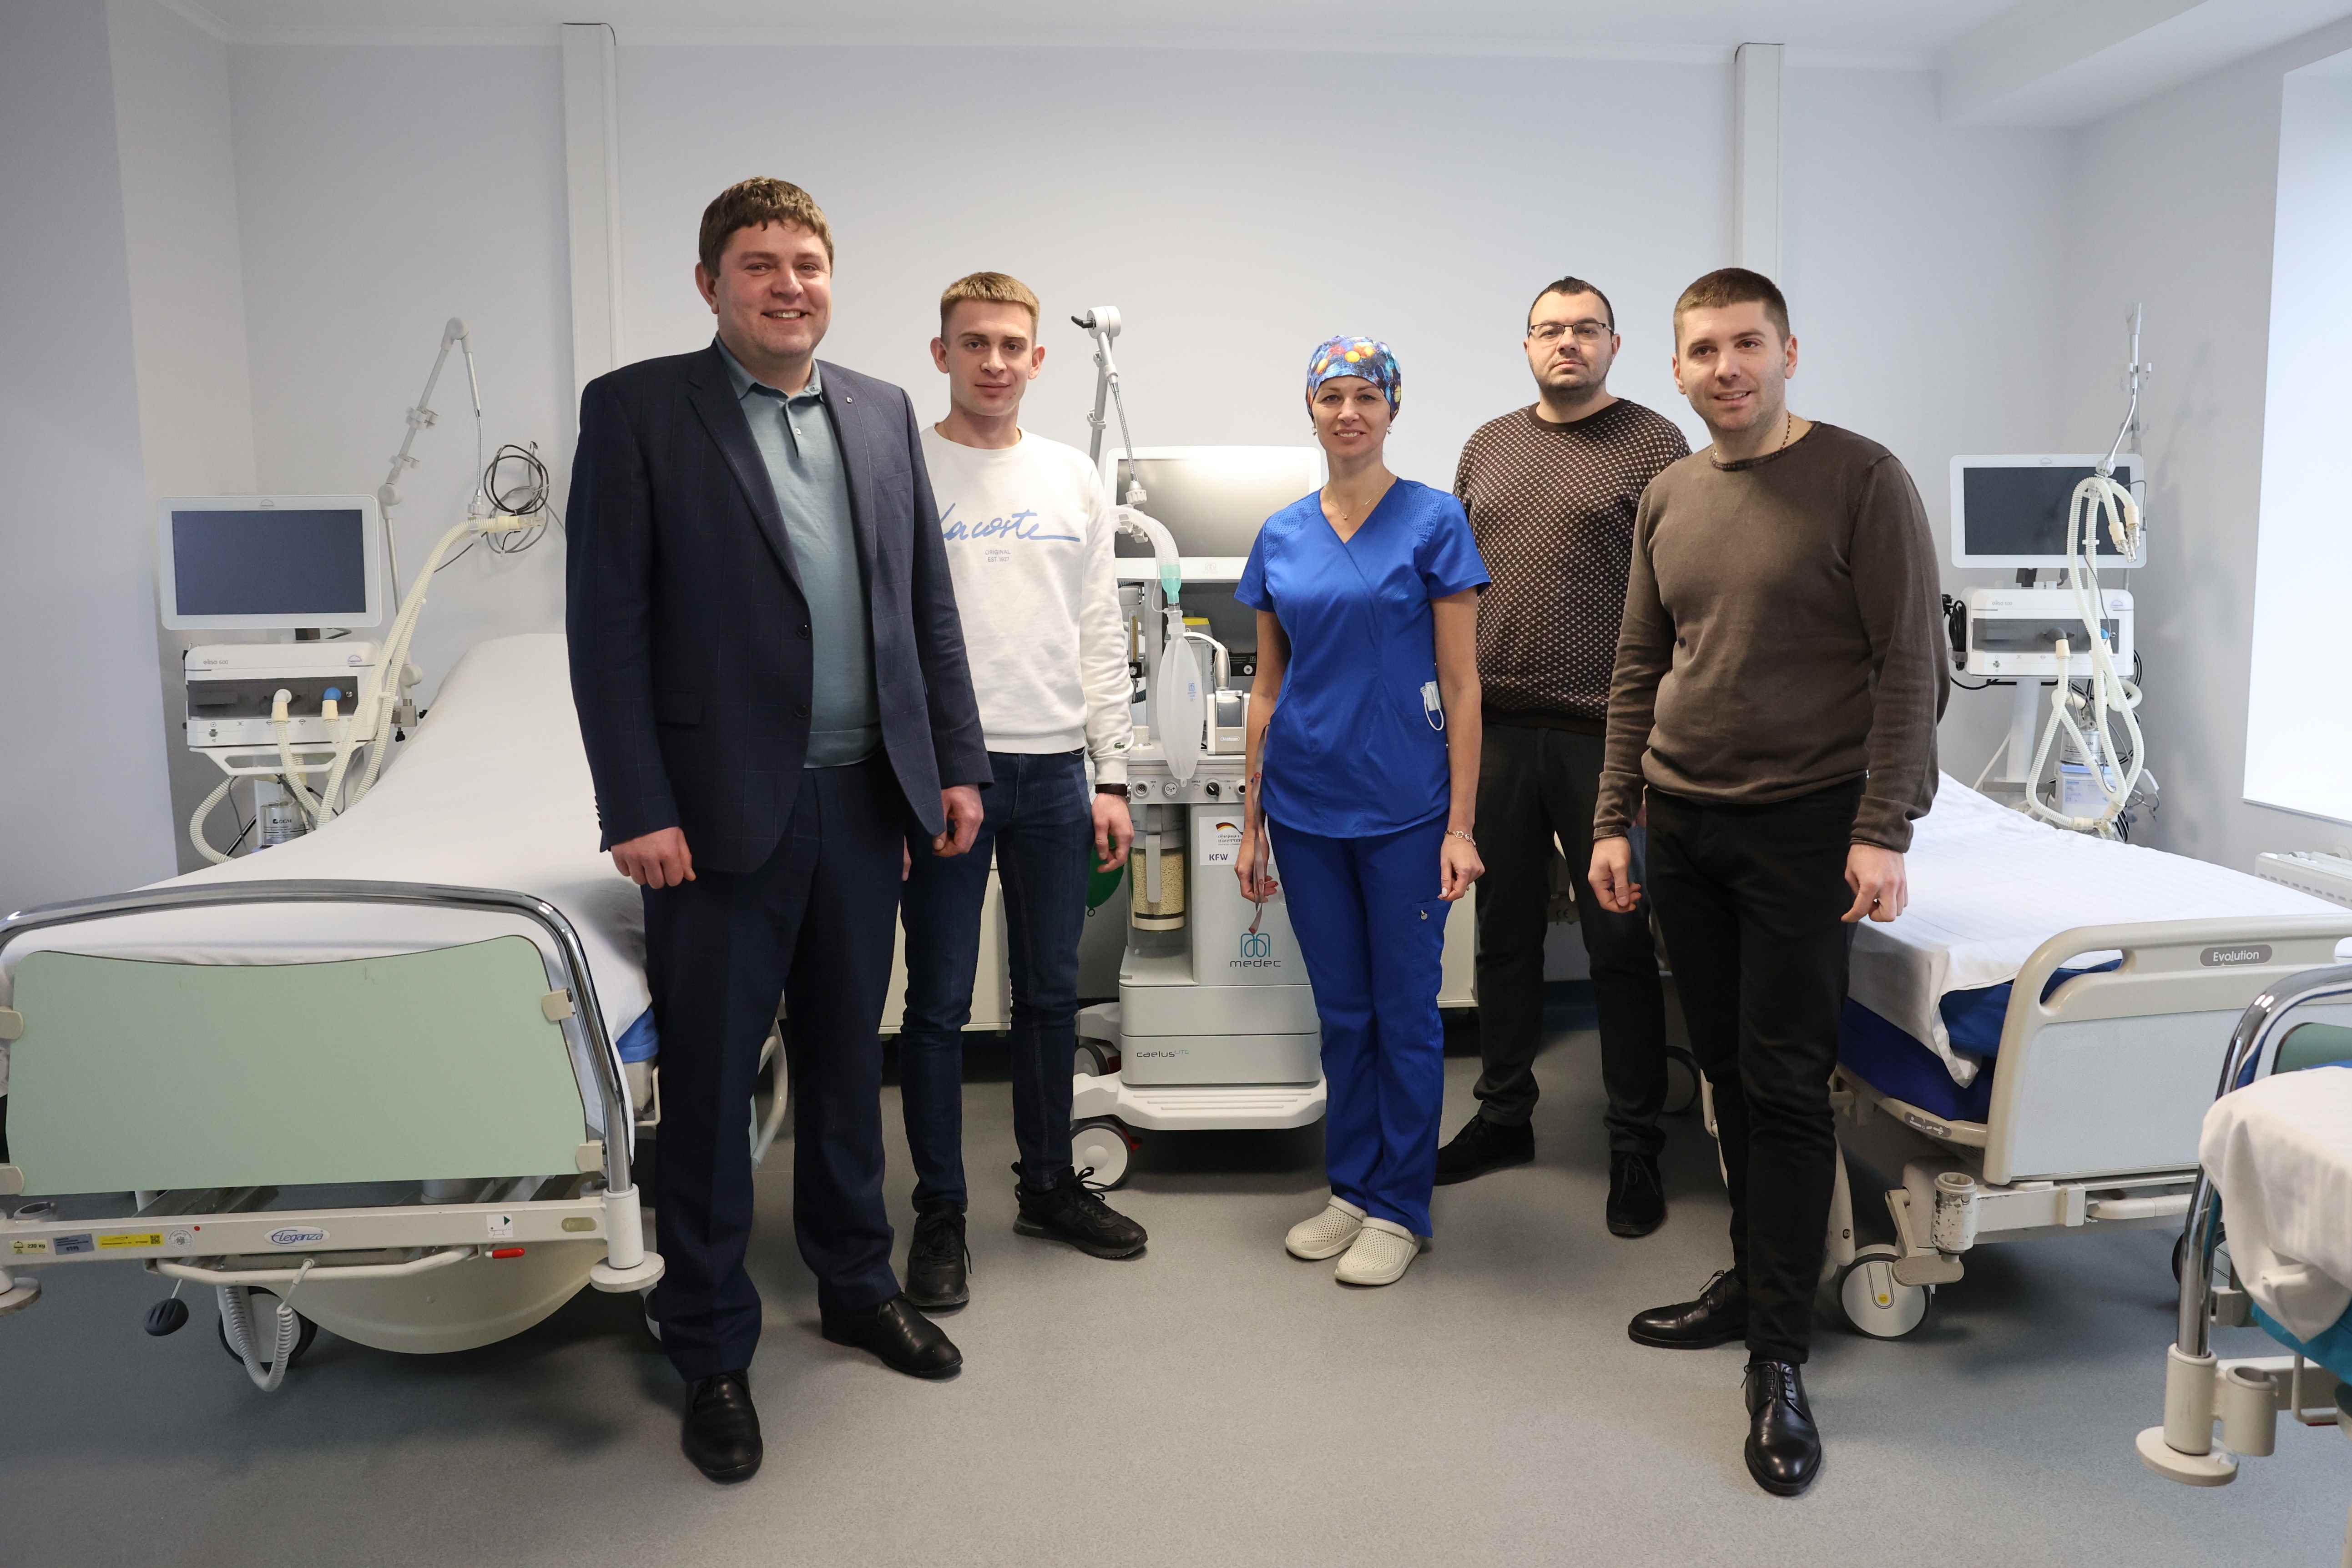 Німеччина передала Першому медоб’єднанню Львова сучасний реабілітаційний комплекс та обладнання для лікування пацієнтів з COVID-19 вартістю понад 1 млн. євро